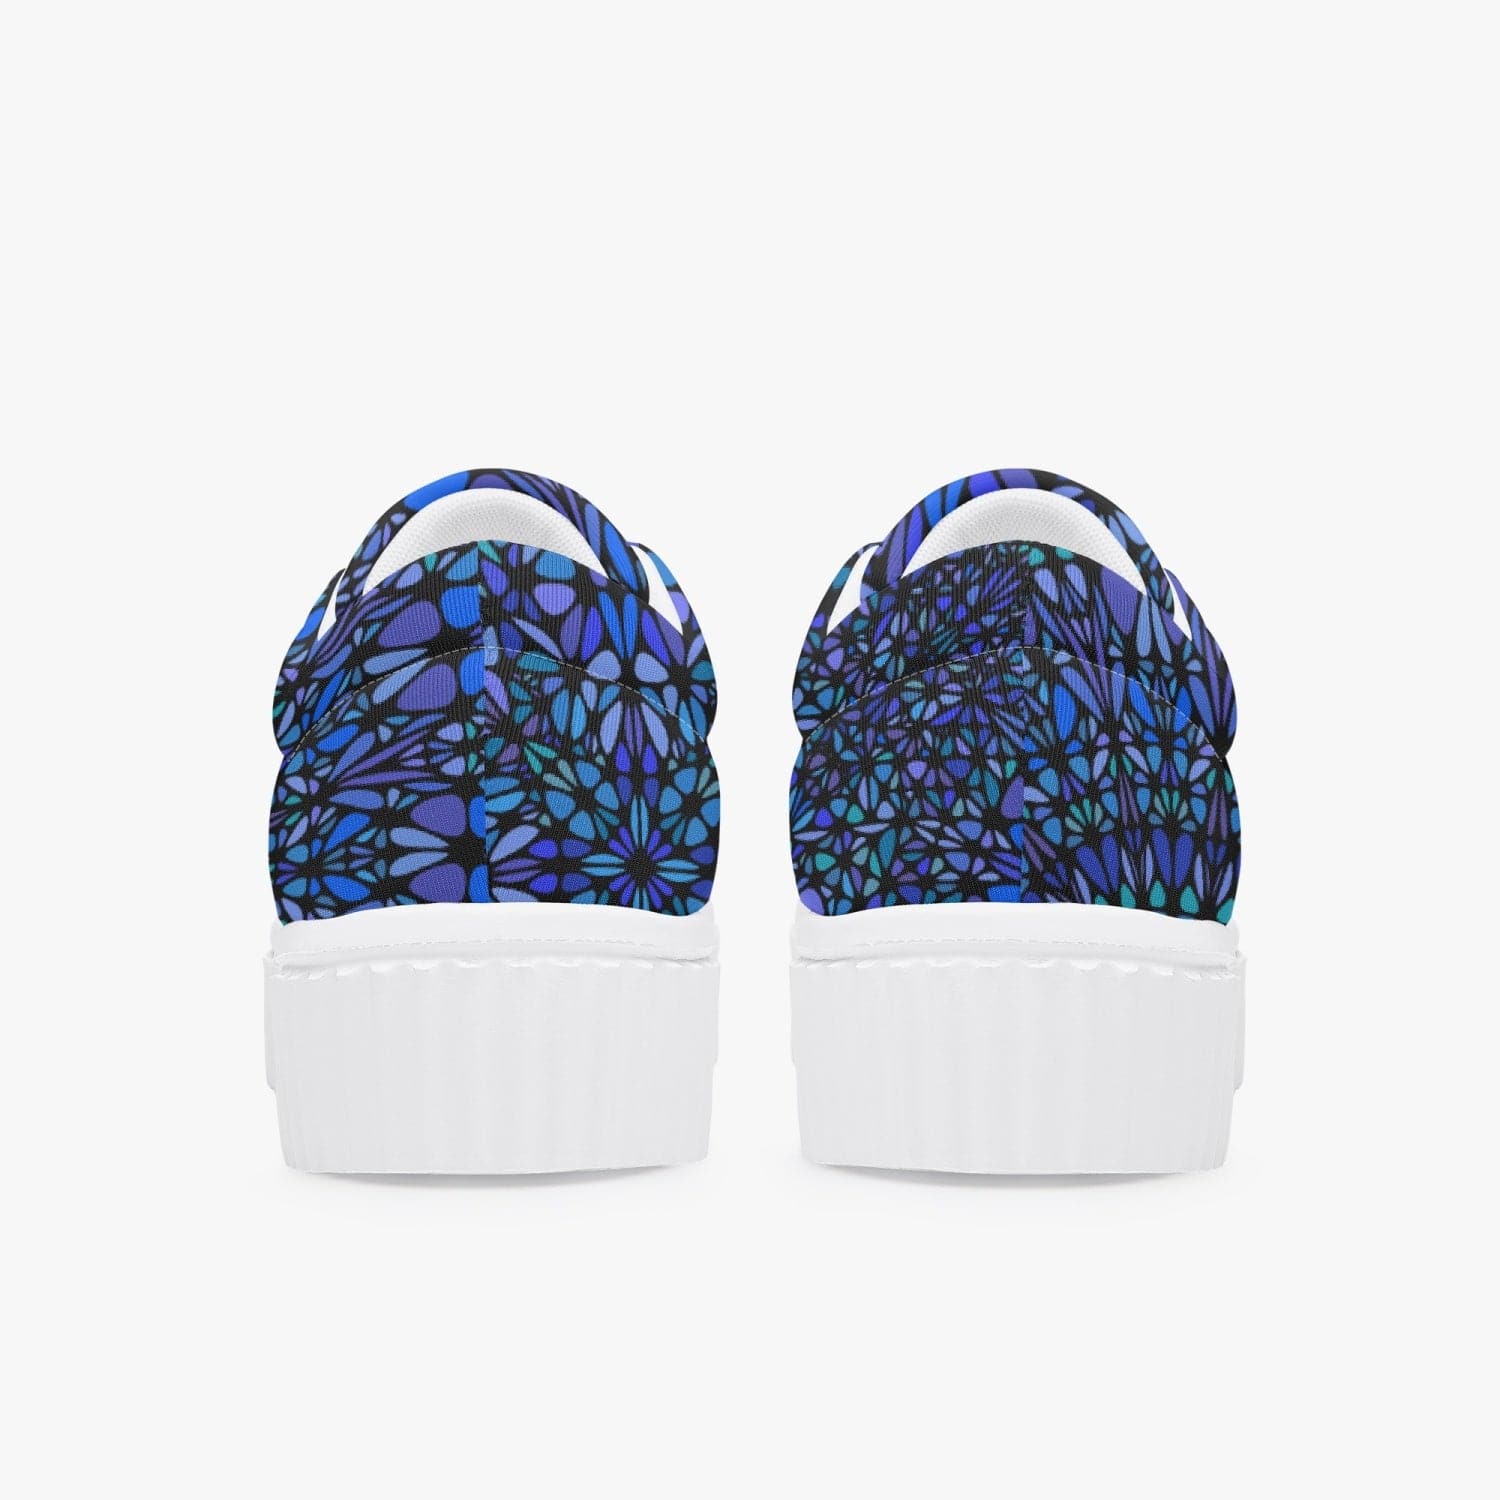 Blue mandala Women’s Low Top Platform Sneakers, designed by Sensus Studio Design